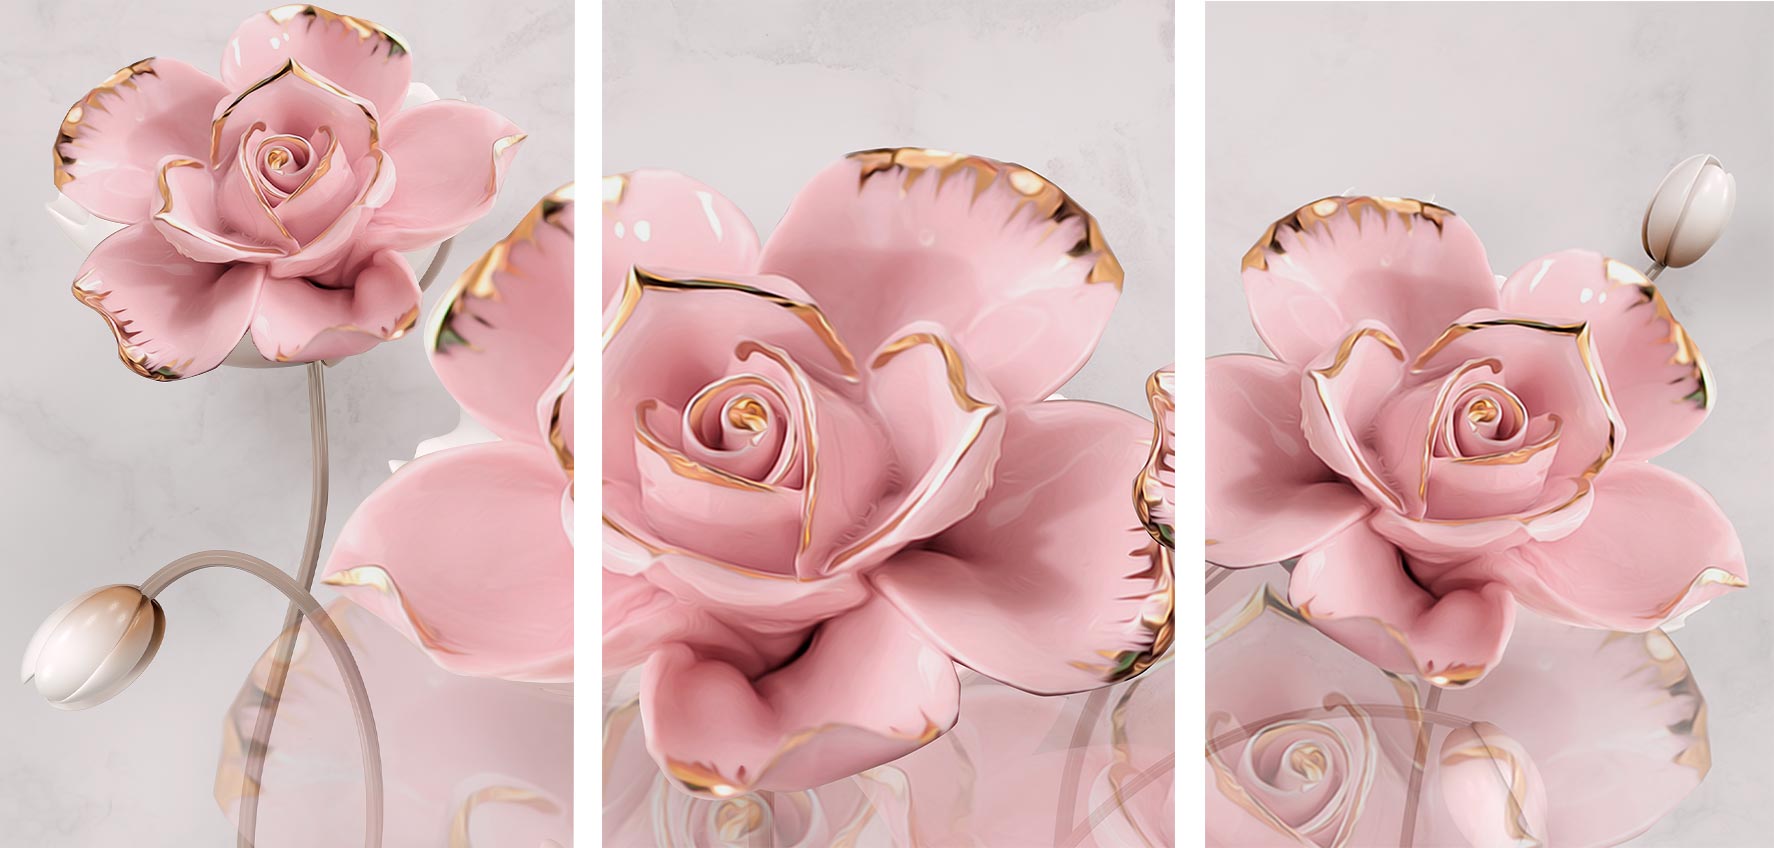 Kit 3 quadros retangulares - Detalhes de flores rosa